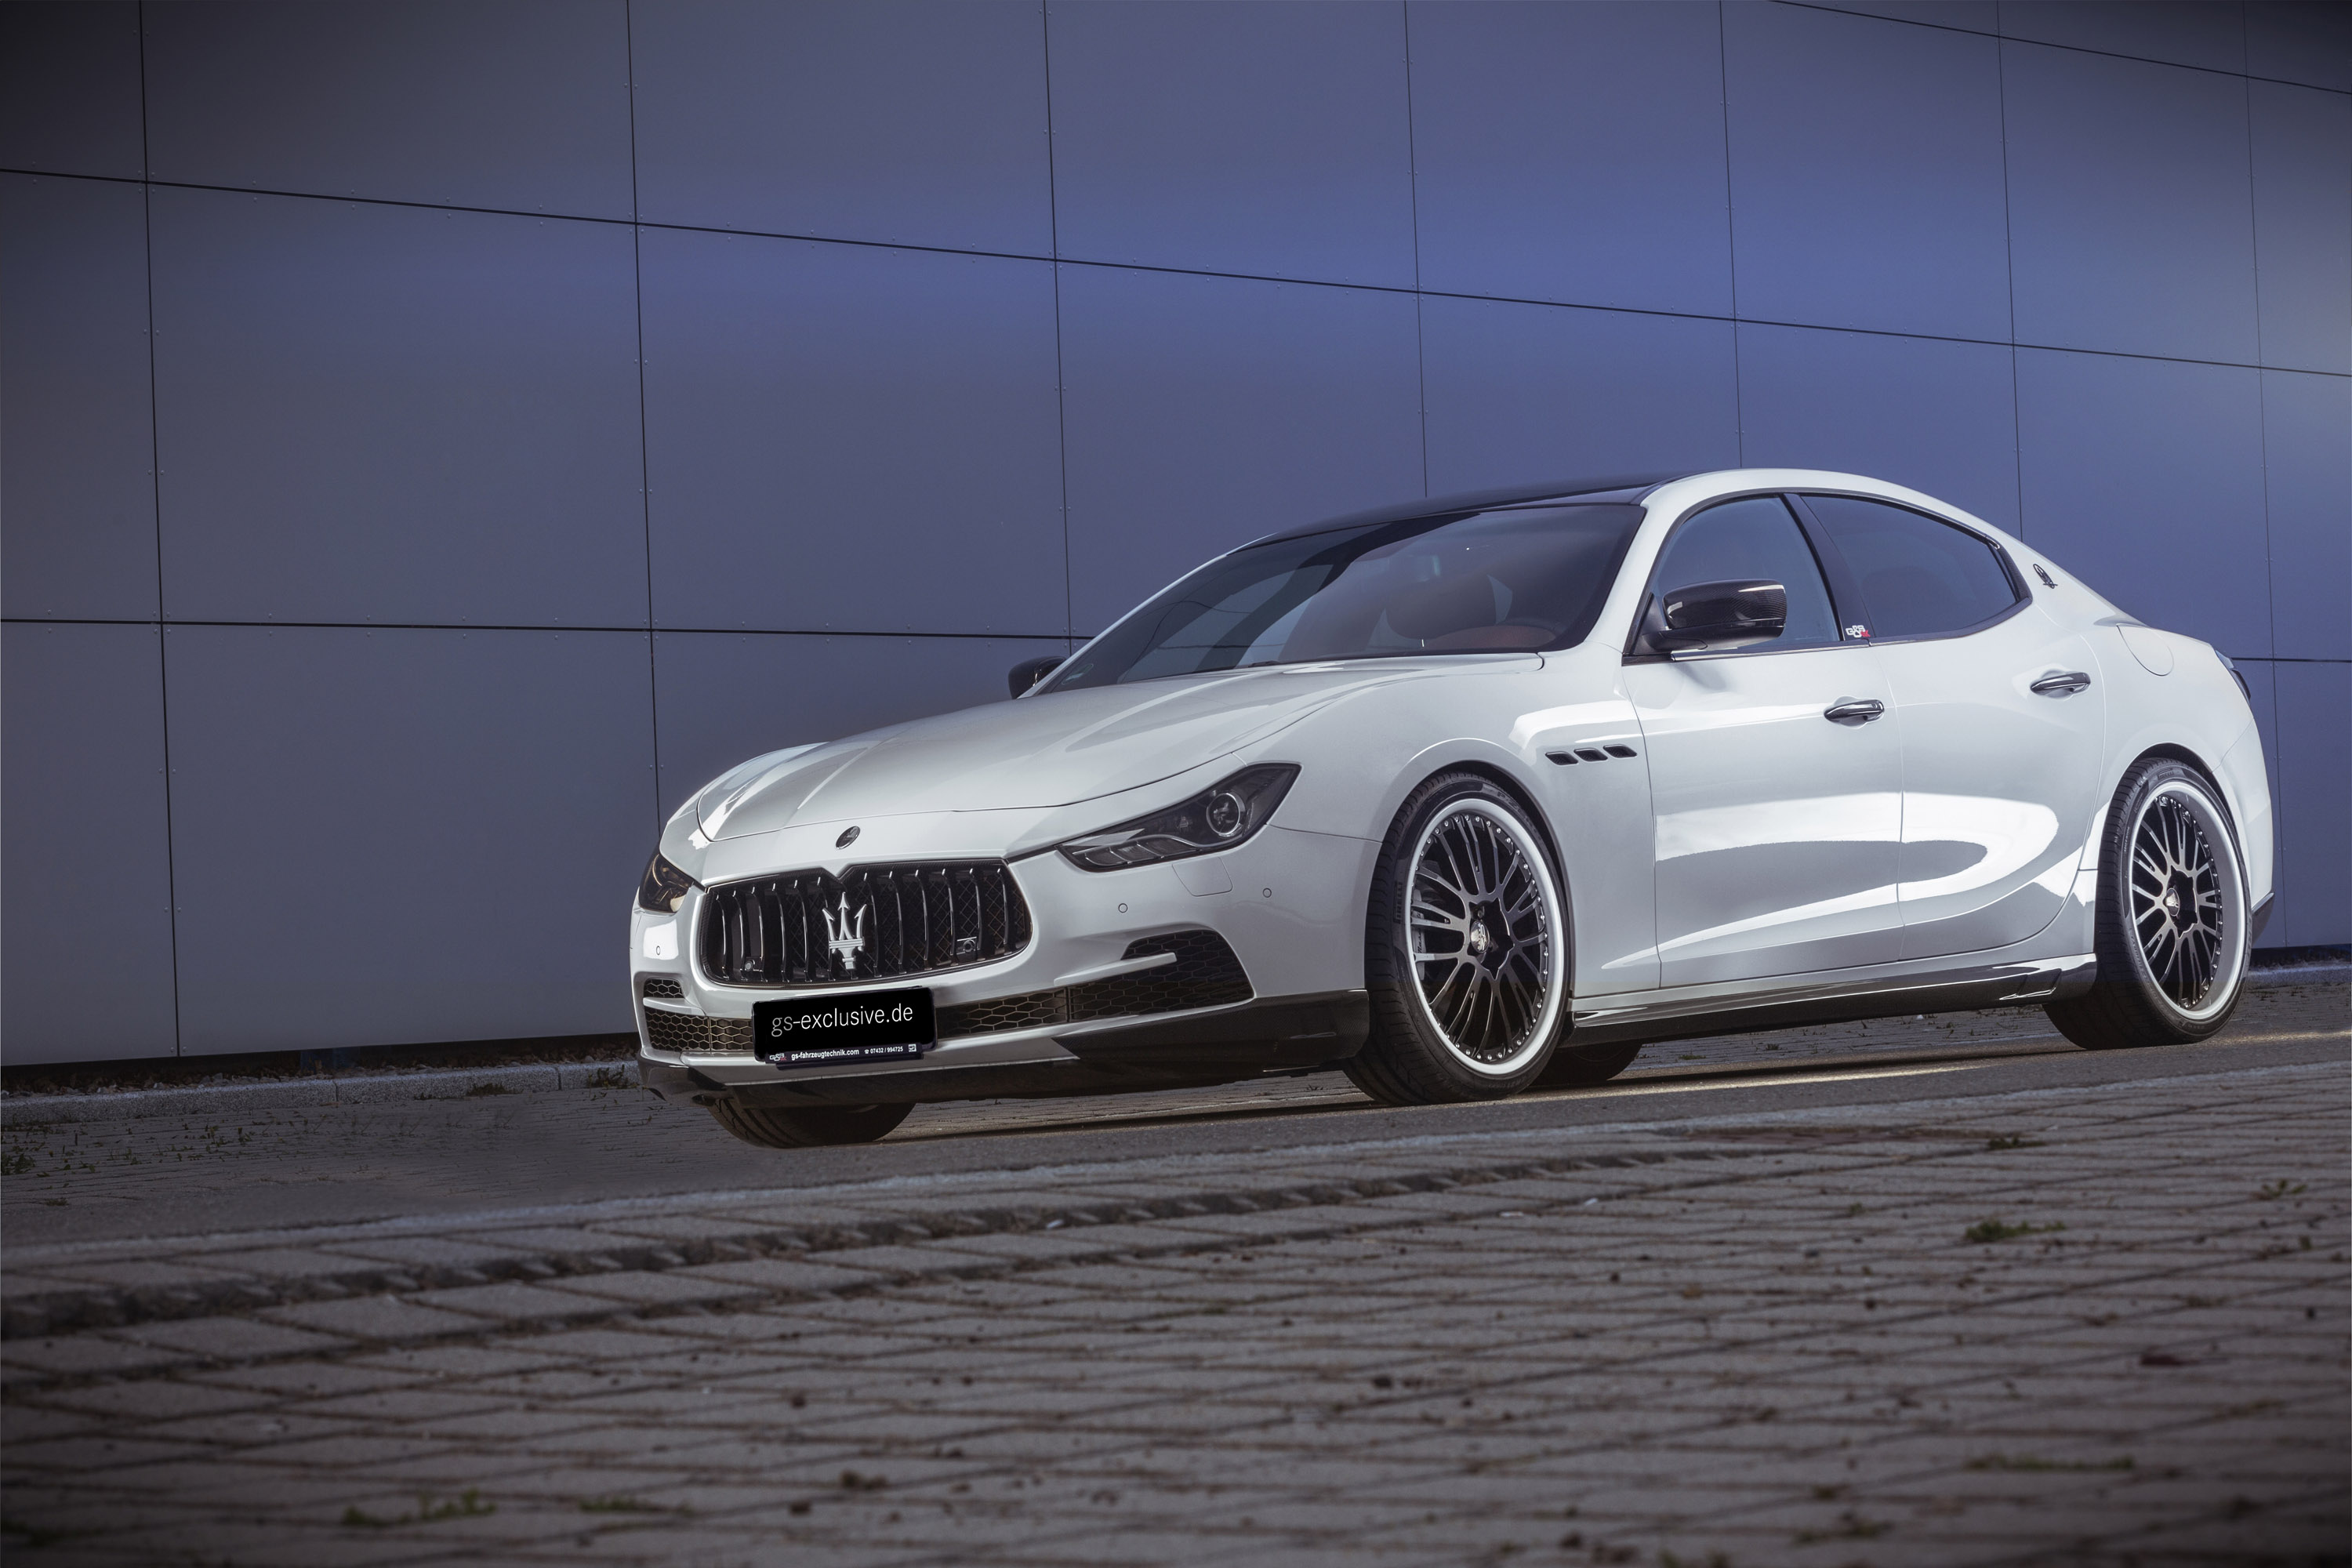 2015 GS Exclusive Maserati Ghibli EVO - HD Pictures @